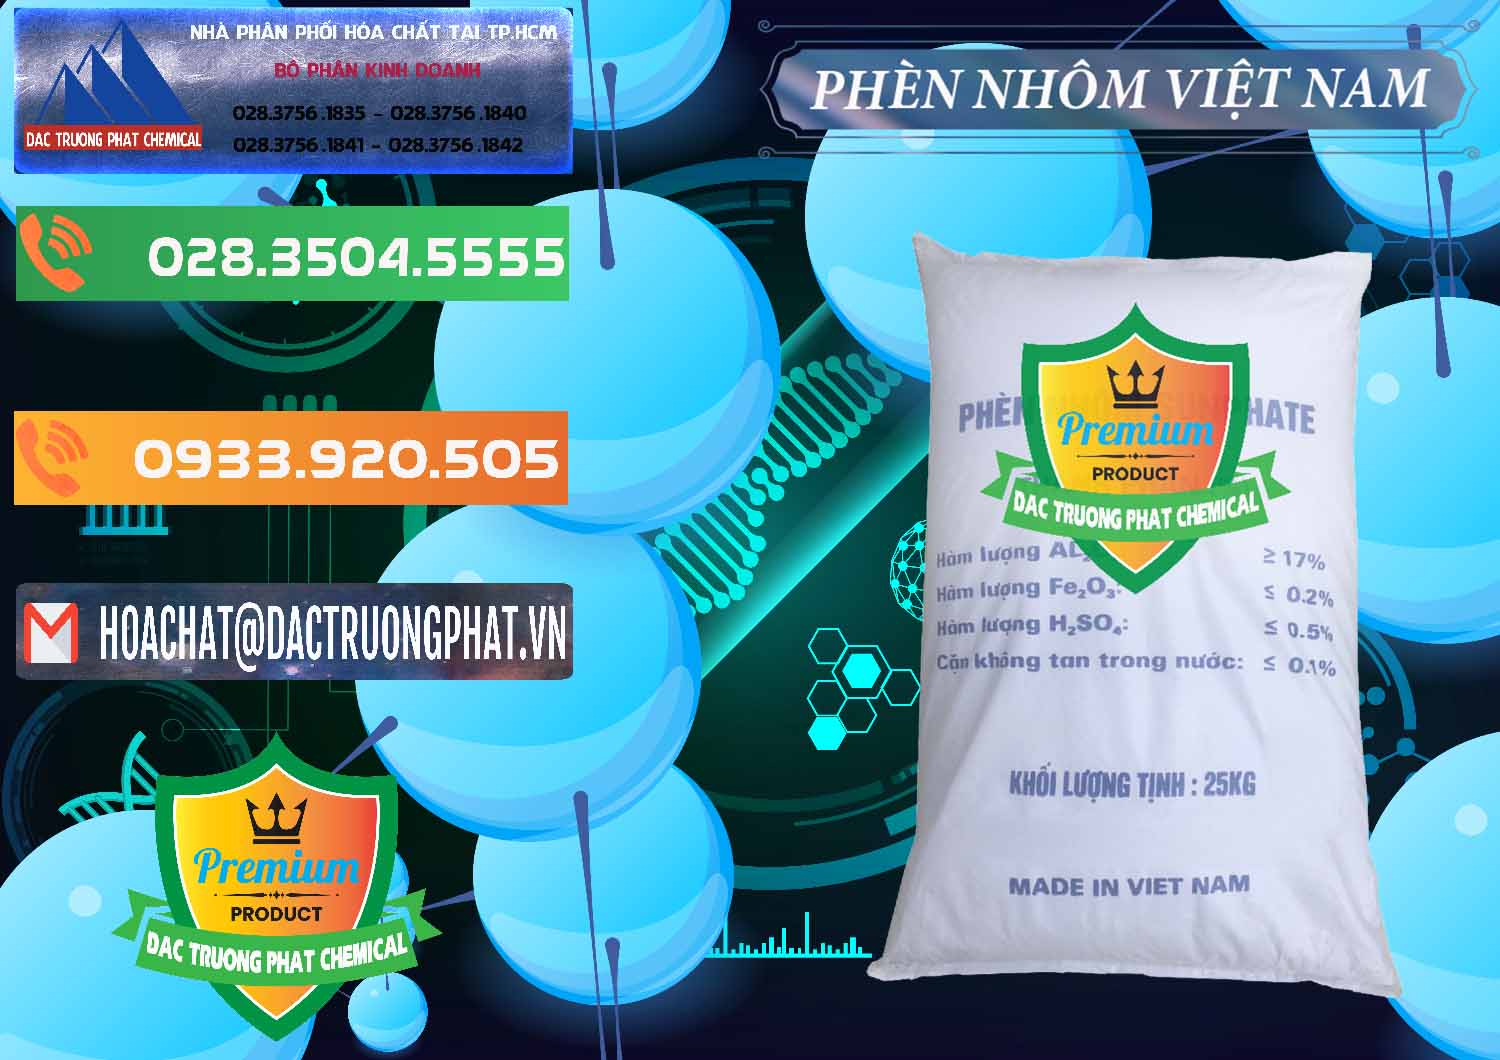 Cty kinh doanh ( bán ) Phèn Nhôm - Al2(SO4)3 17% Việt Nam - 0465 - Nhà phân phối ( kinh doanh ) hóa chất tại TP.HCM - hoachatxulynuoc.com.vn